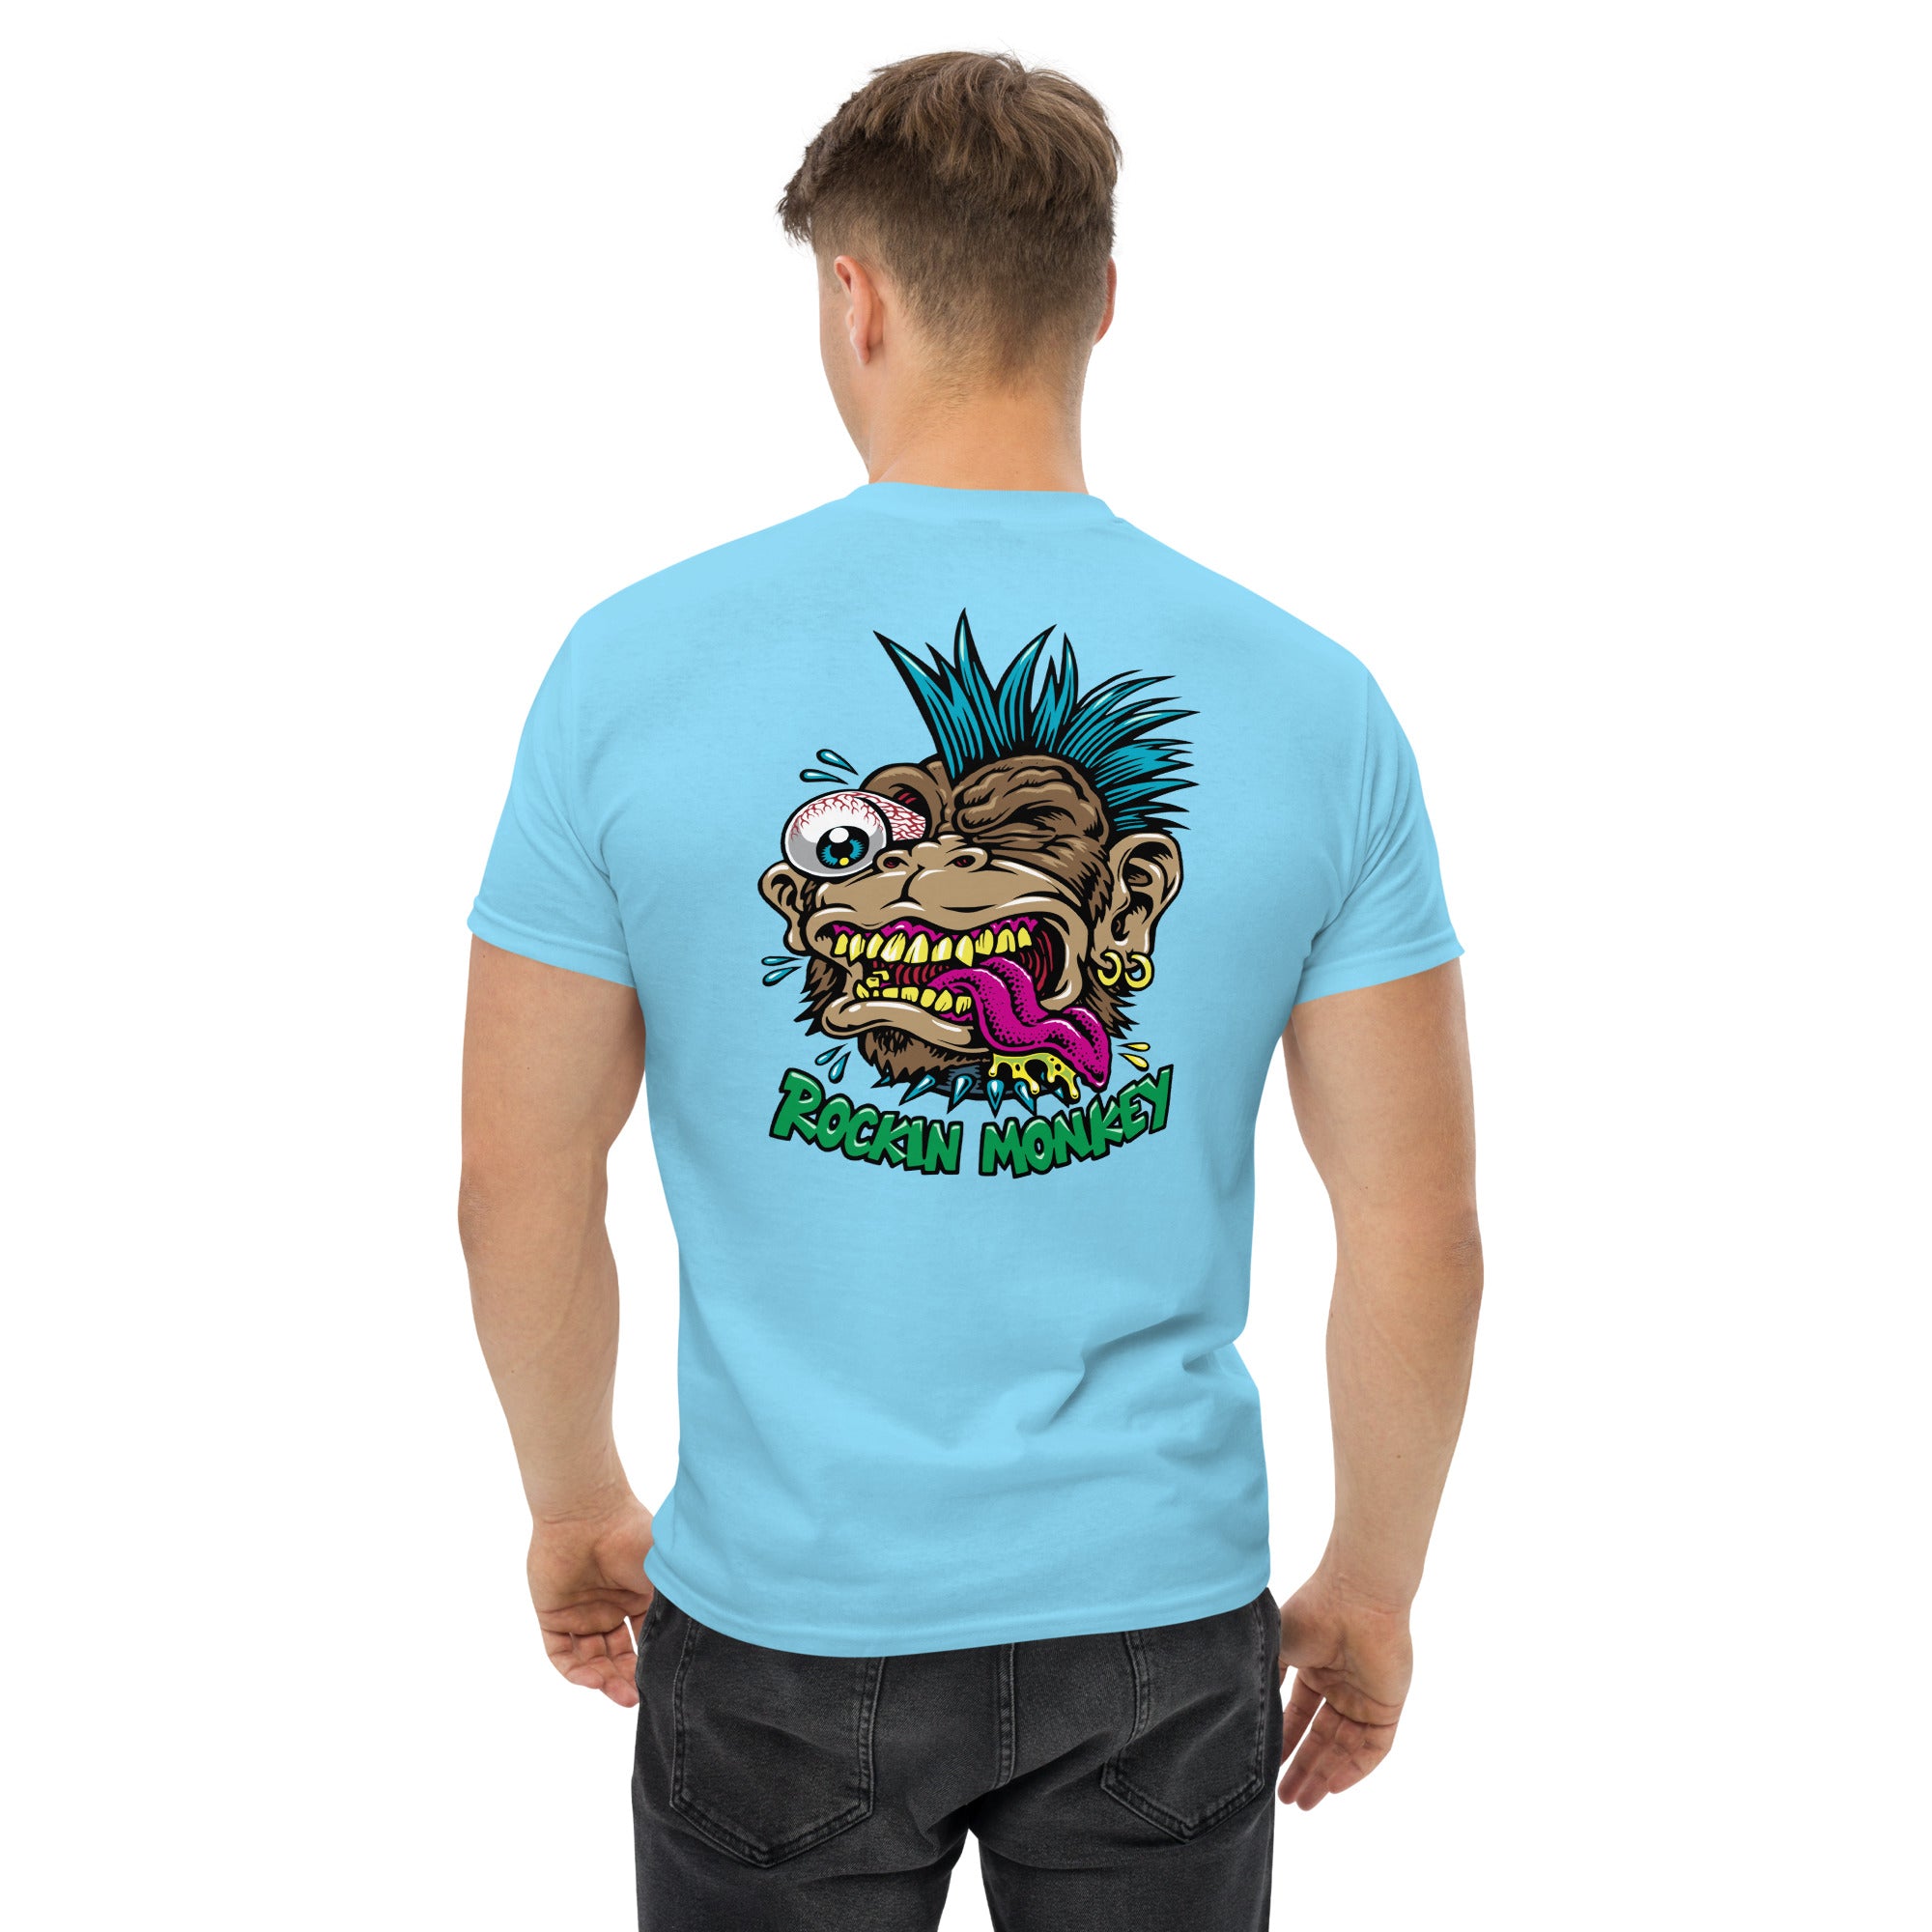 Jimbo Phillips x Rockin Monkey T-Shirt